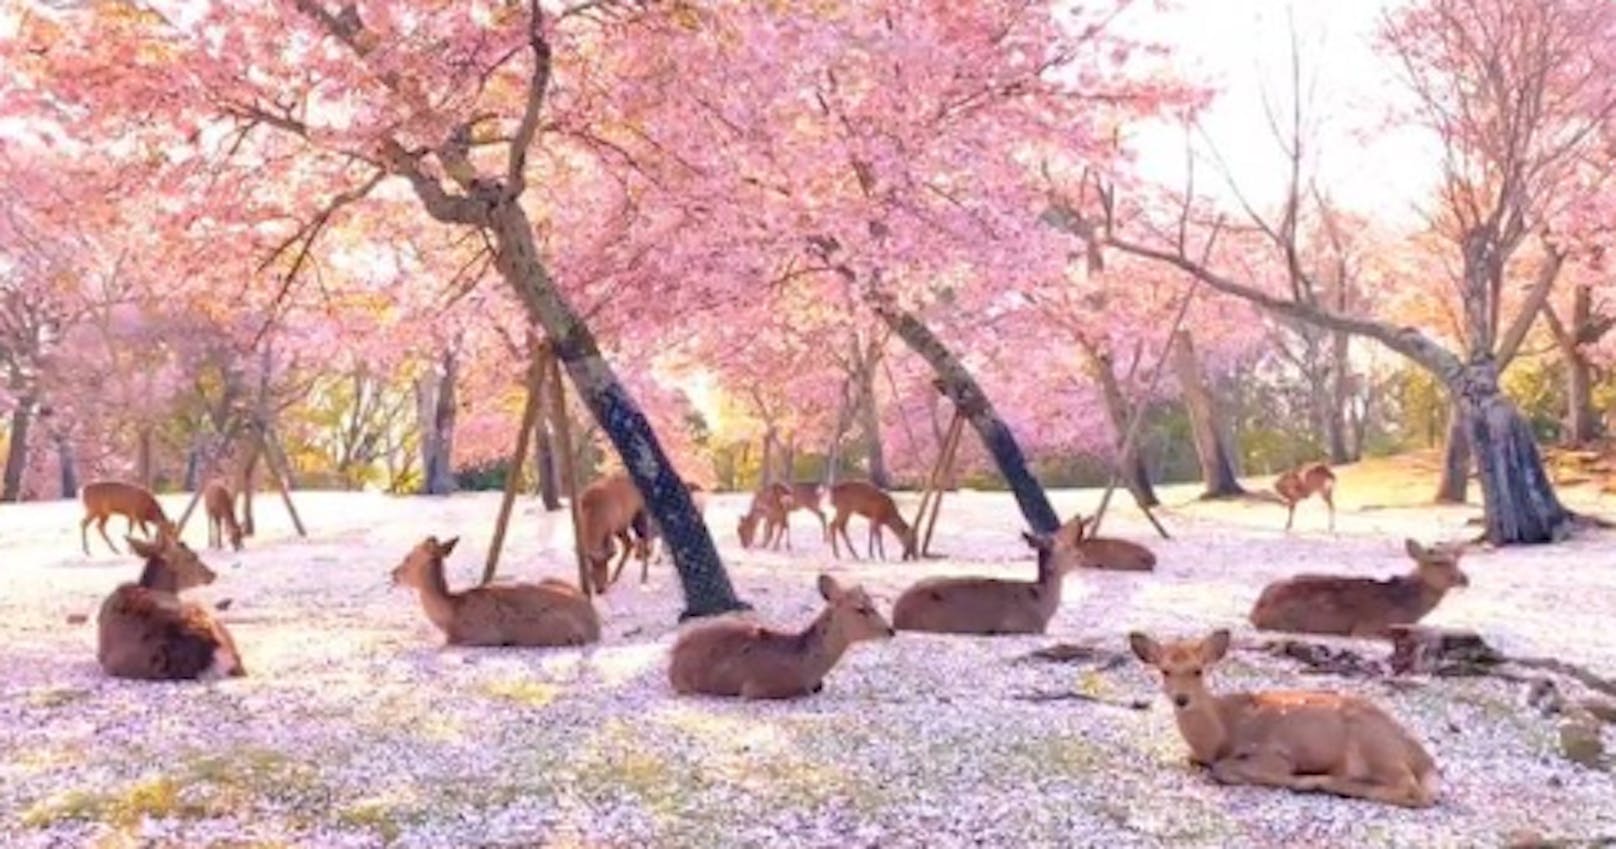 <strong>Wunderschön:</strong> <a href="https://tierisch.heute.at/a/100082973/keine-touristen---%C3%BCber-1000-rehe-geniessen-park">Statt Touristen, über 1000 Rehe im berühmten Nara Park in Japan</a>. (Mai 2020)<br>